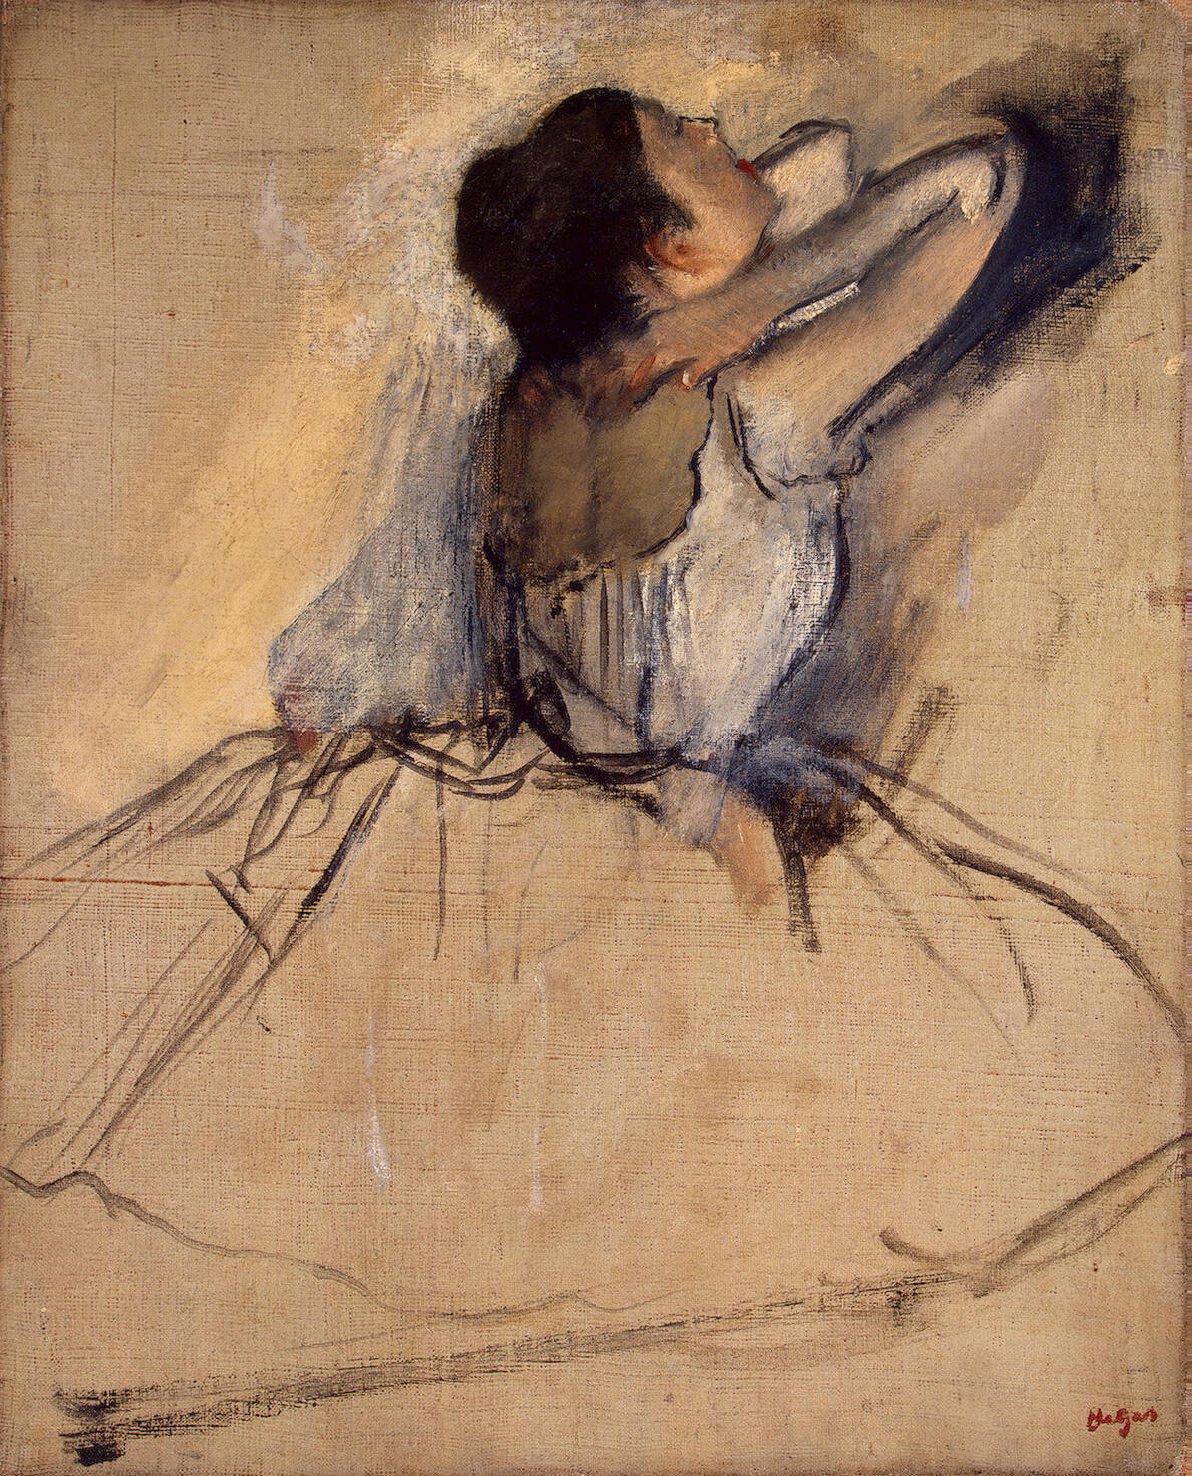 Edgar Degas | The Dancers | The Metropolitan Museum of Art